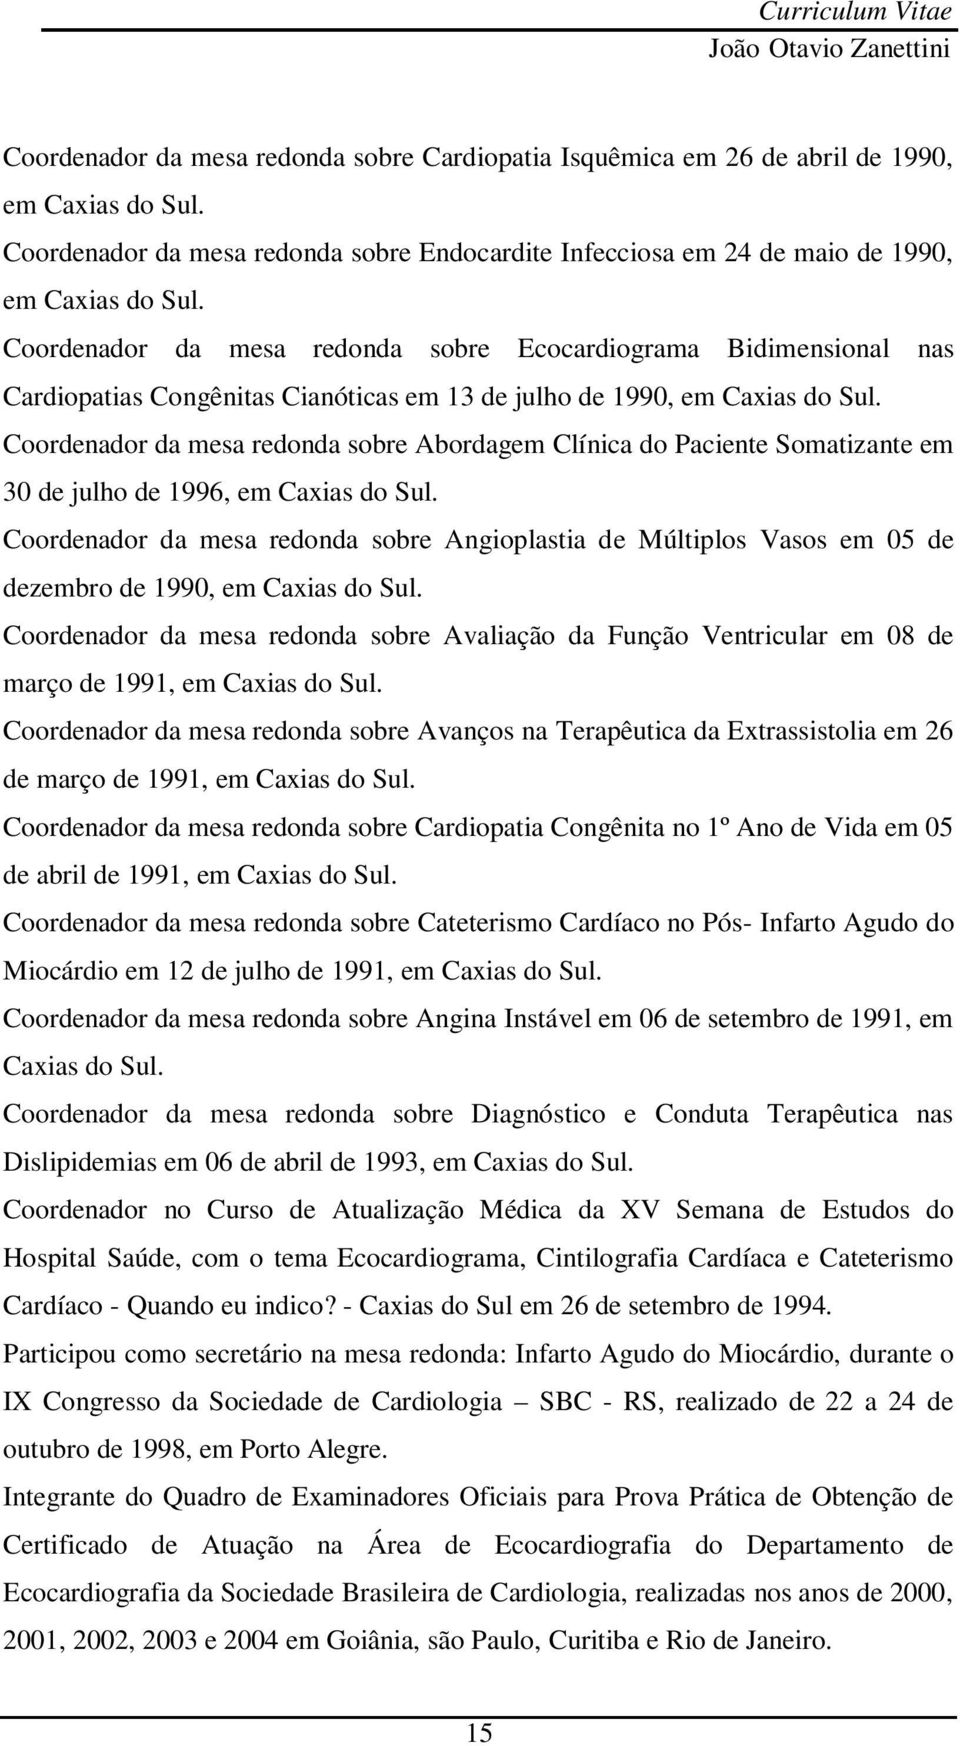 Coordenador da mesa redonda sobre Abordagem Clínica do Paciente Somatizante em 30 de julho de 1996, em Caxias do Sul.